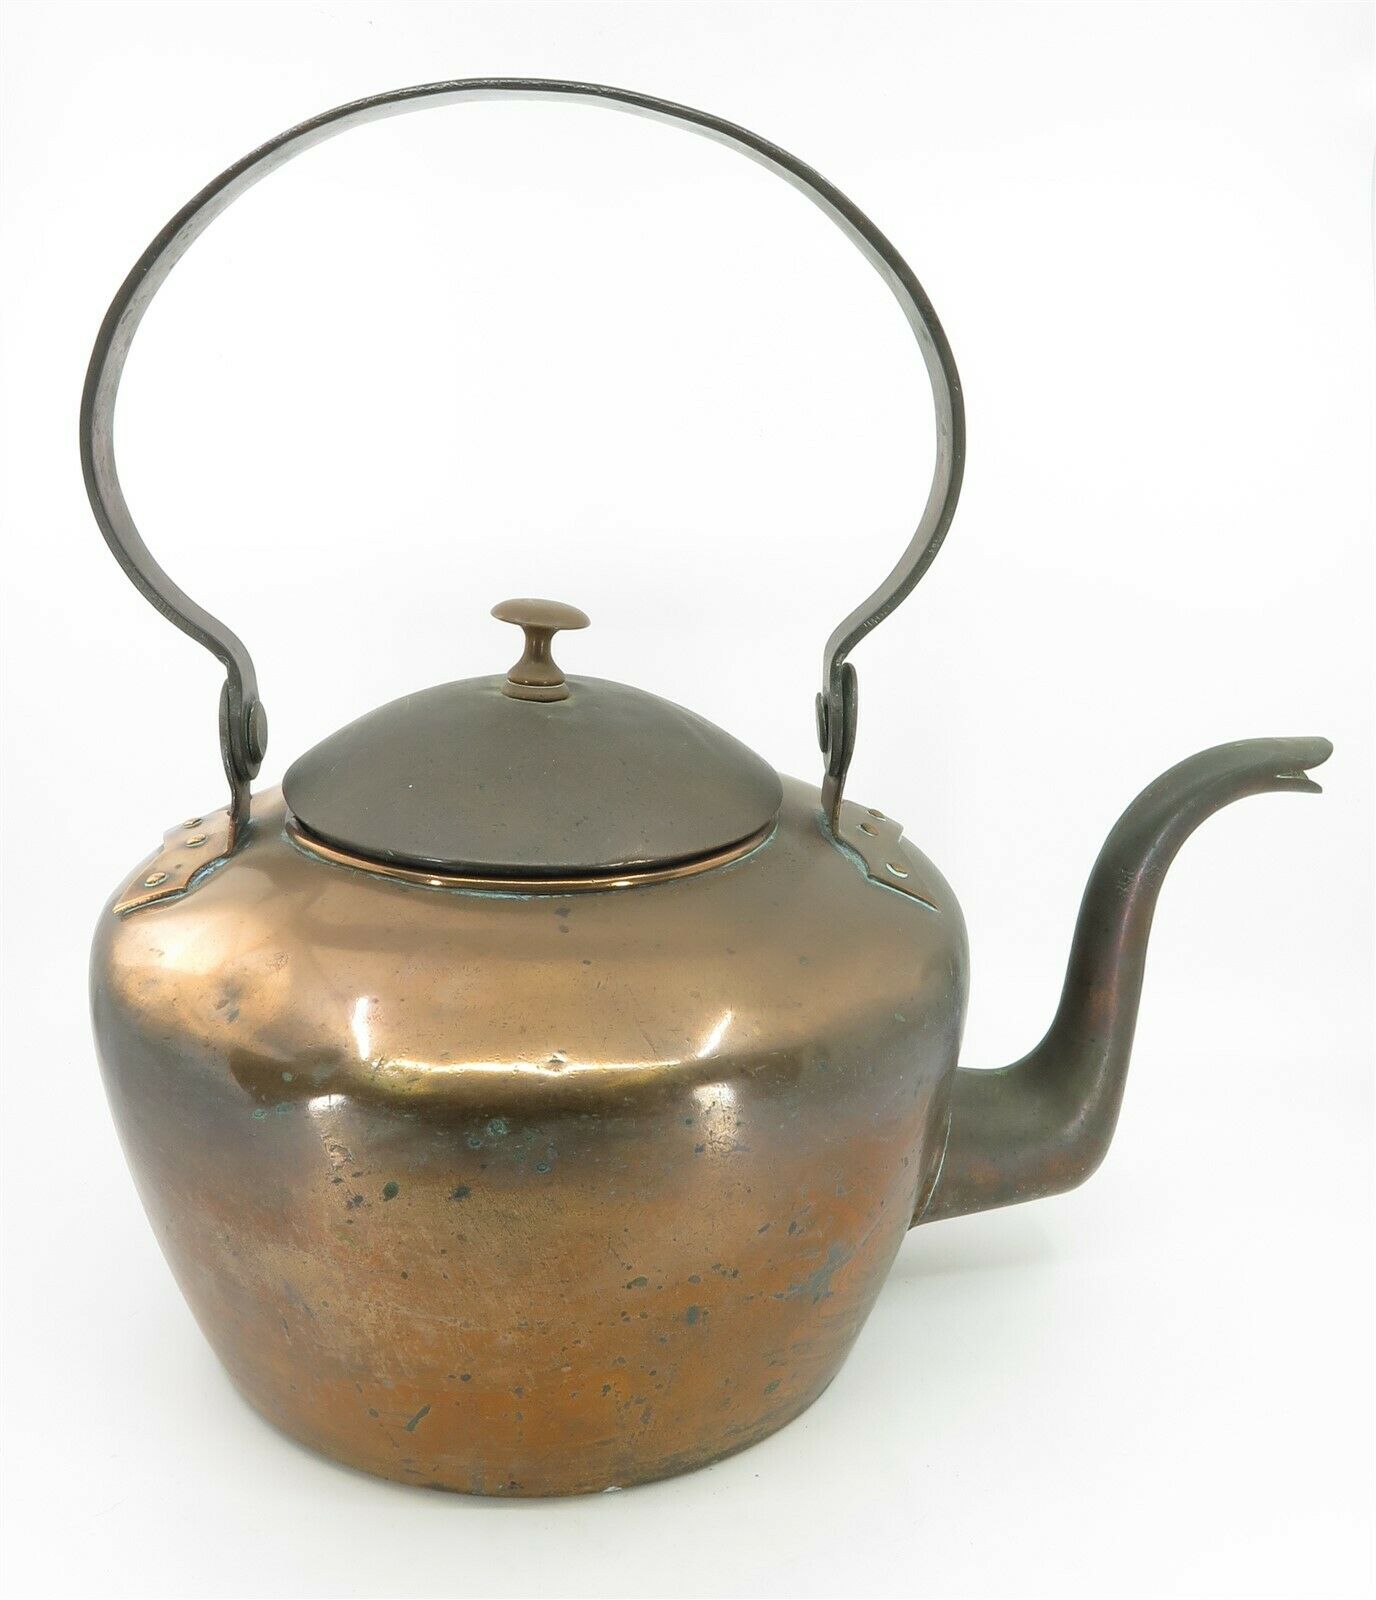 Copper Kettle “I. BABB” circa 1790-1810